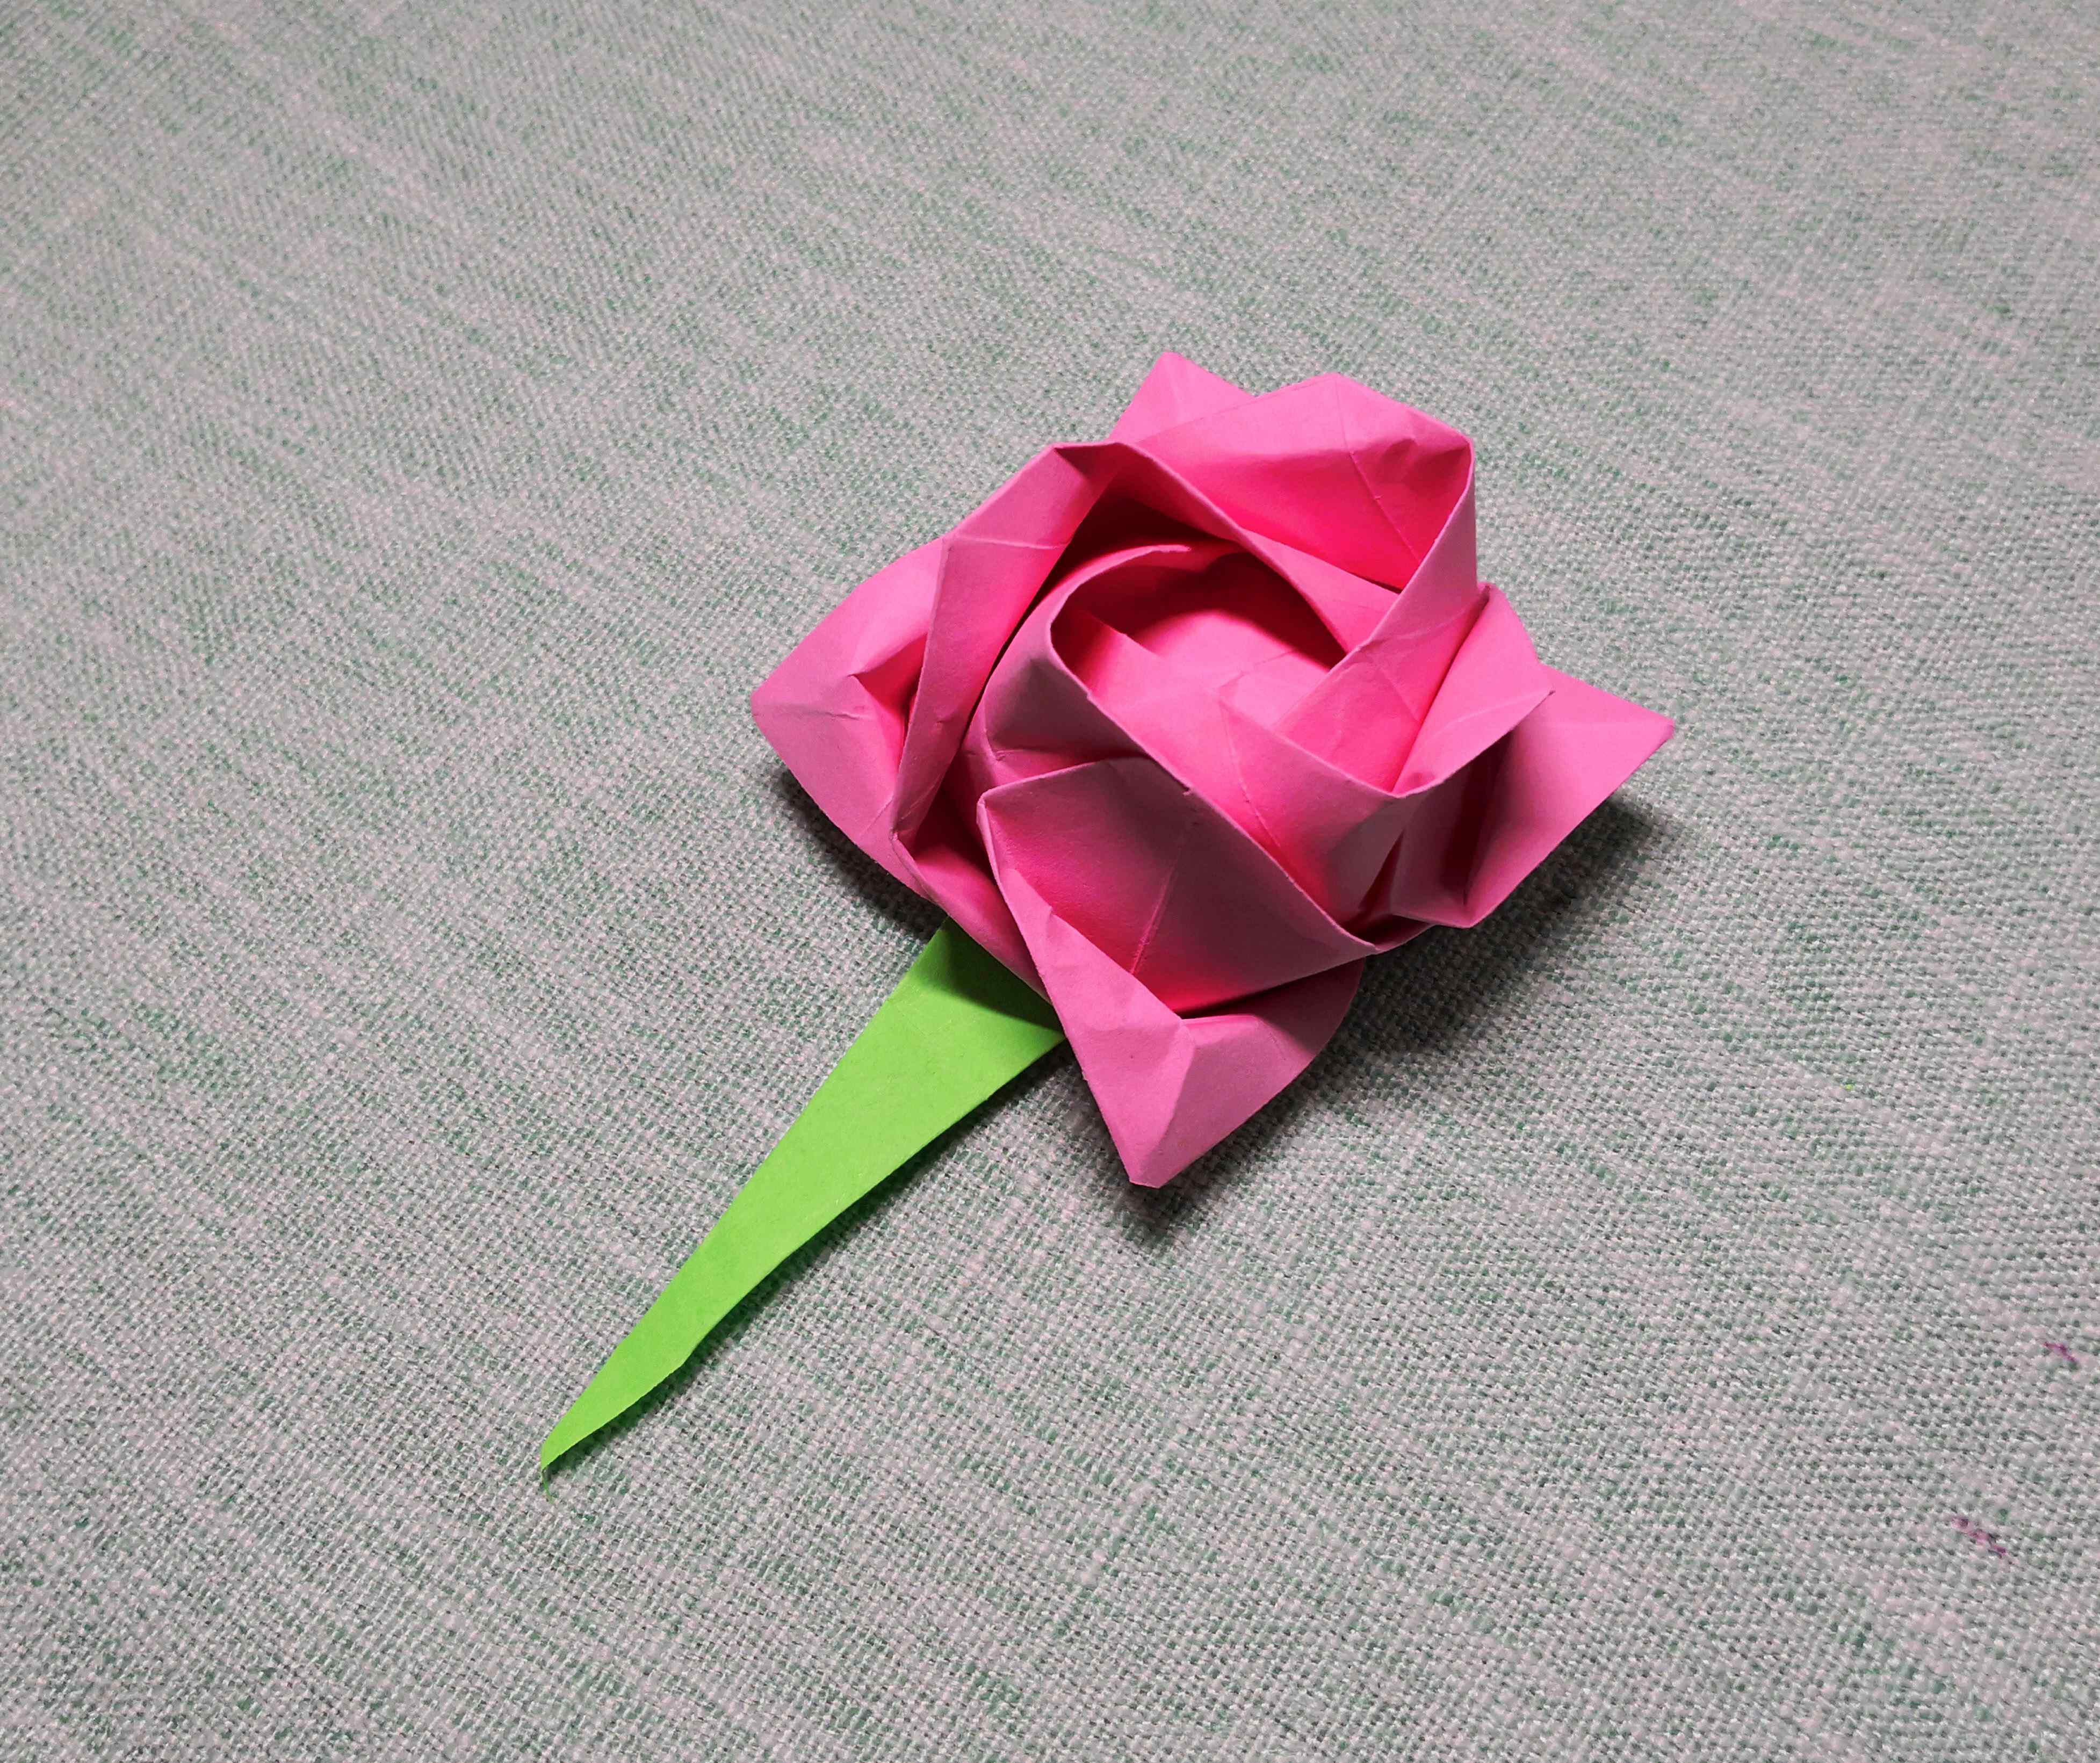 川崎玫瑰的折法 川崎玫瑰超清详细折纸教程,适合新手的玫瑰花经典折法